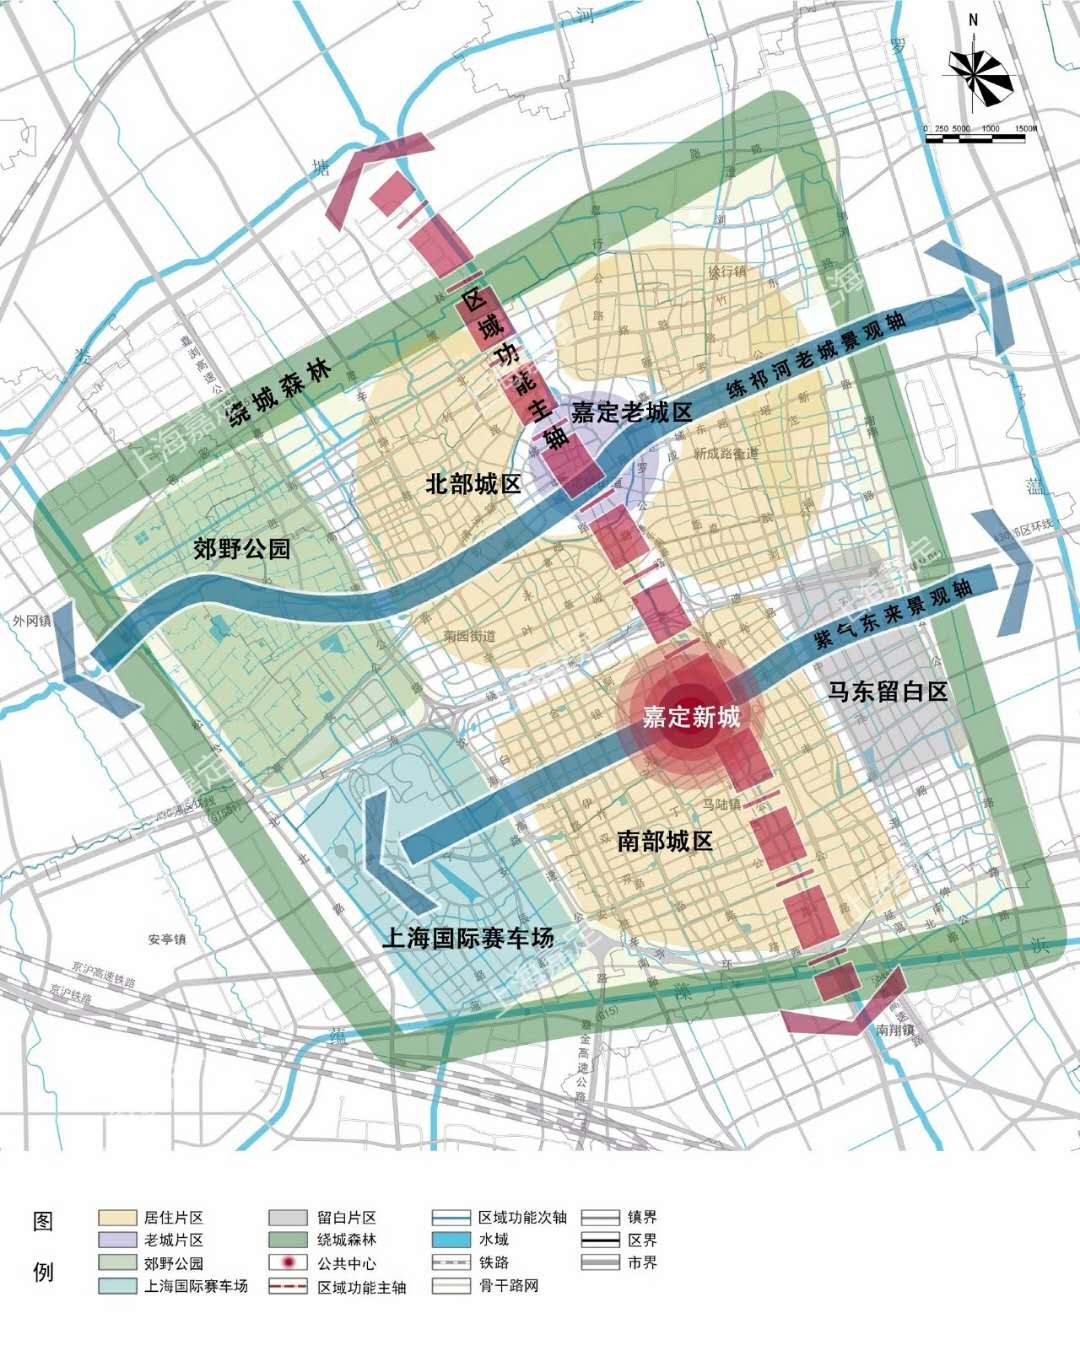 上图来源于《上海市嘉定区总体规划暨土地利用总体规划(2017-2035年)》